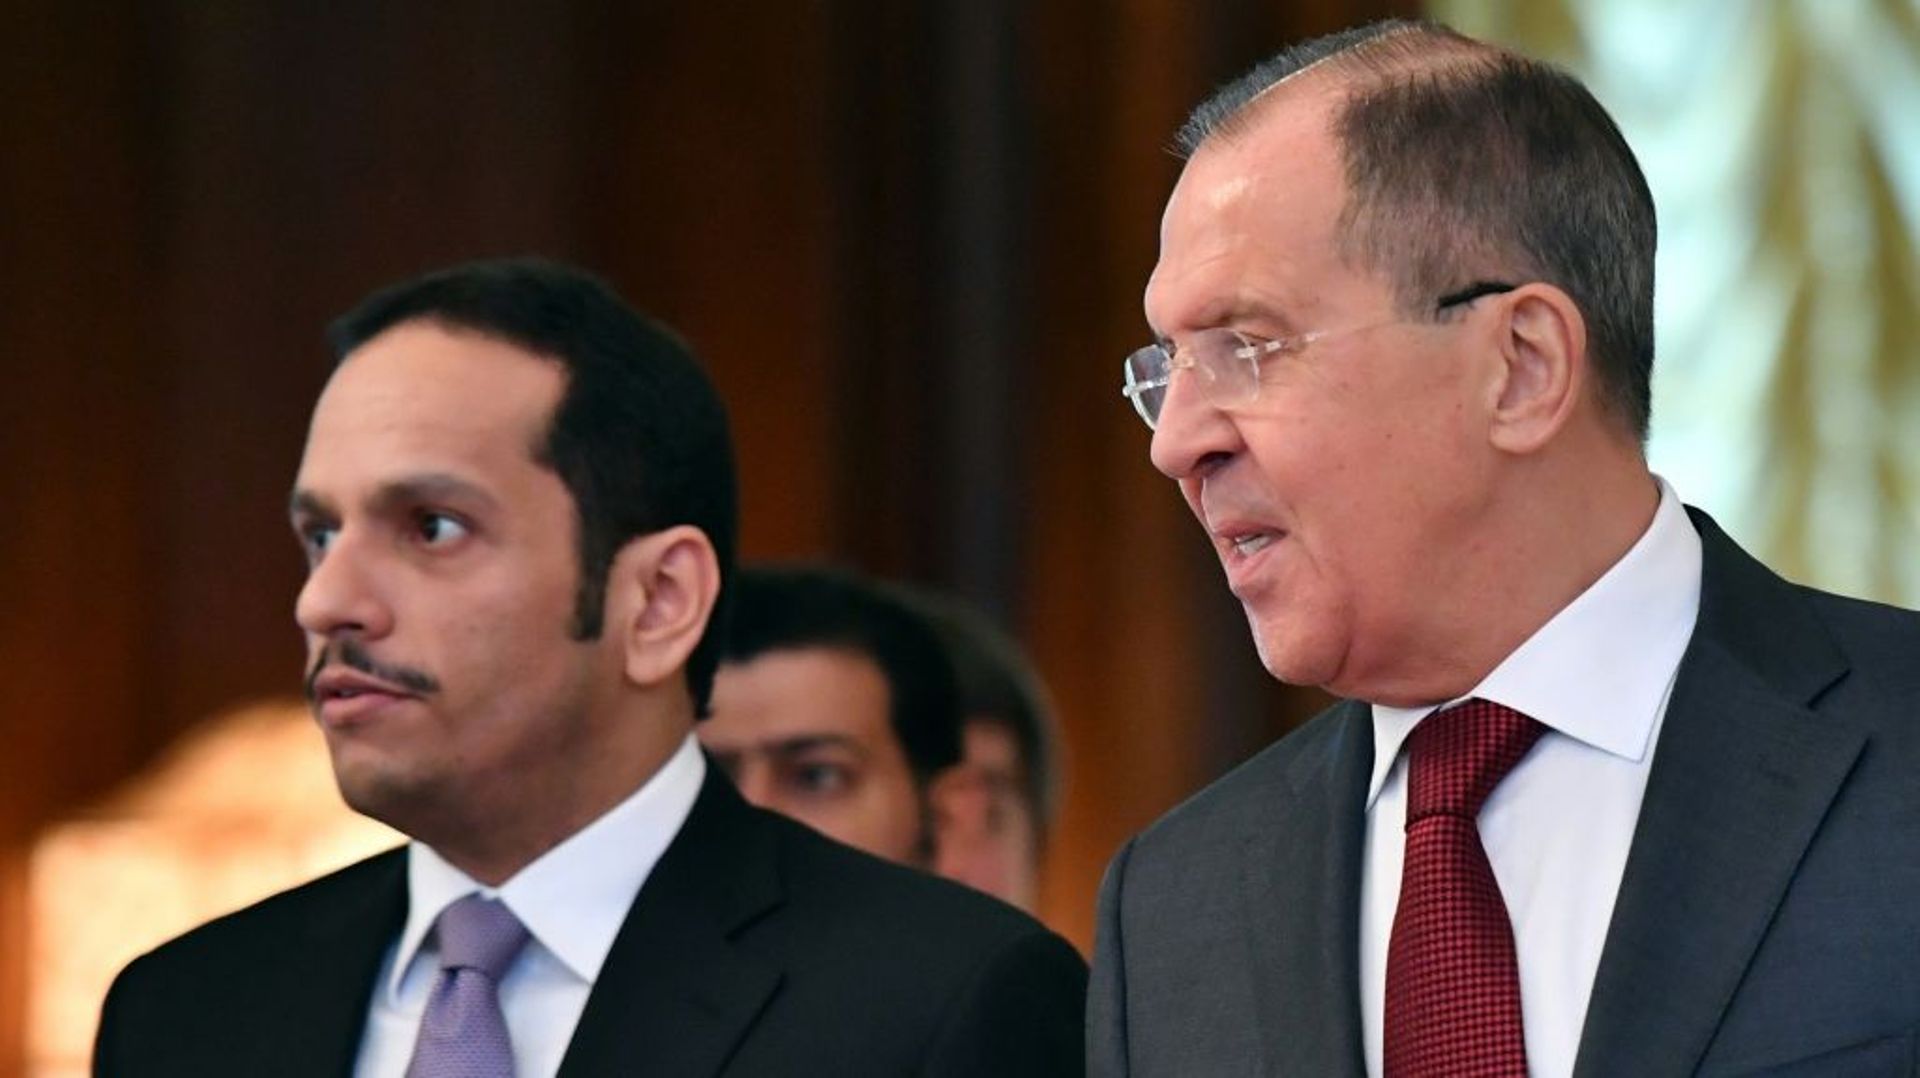 Le chef de la diplomatie russe Sergei Lavrov (D) et le ministre qatari des Affaires étrangères Mohammed bin Abdulrahman bin Jassim Al-Thani lors d'une réunion à Moscou le 10 juin 2017